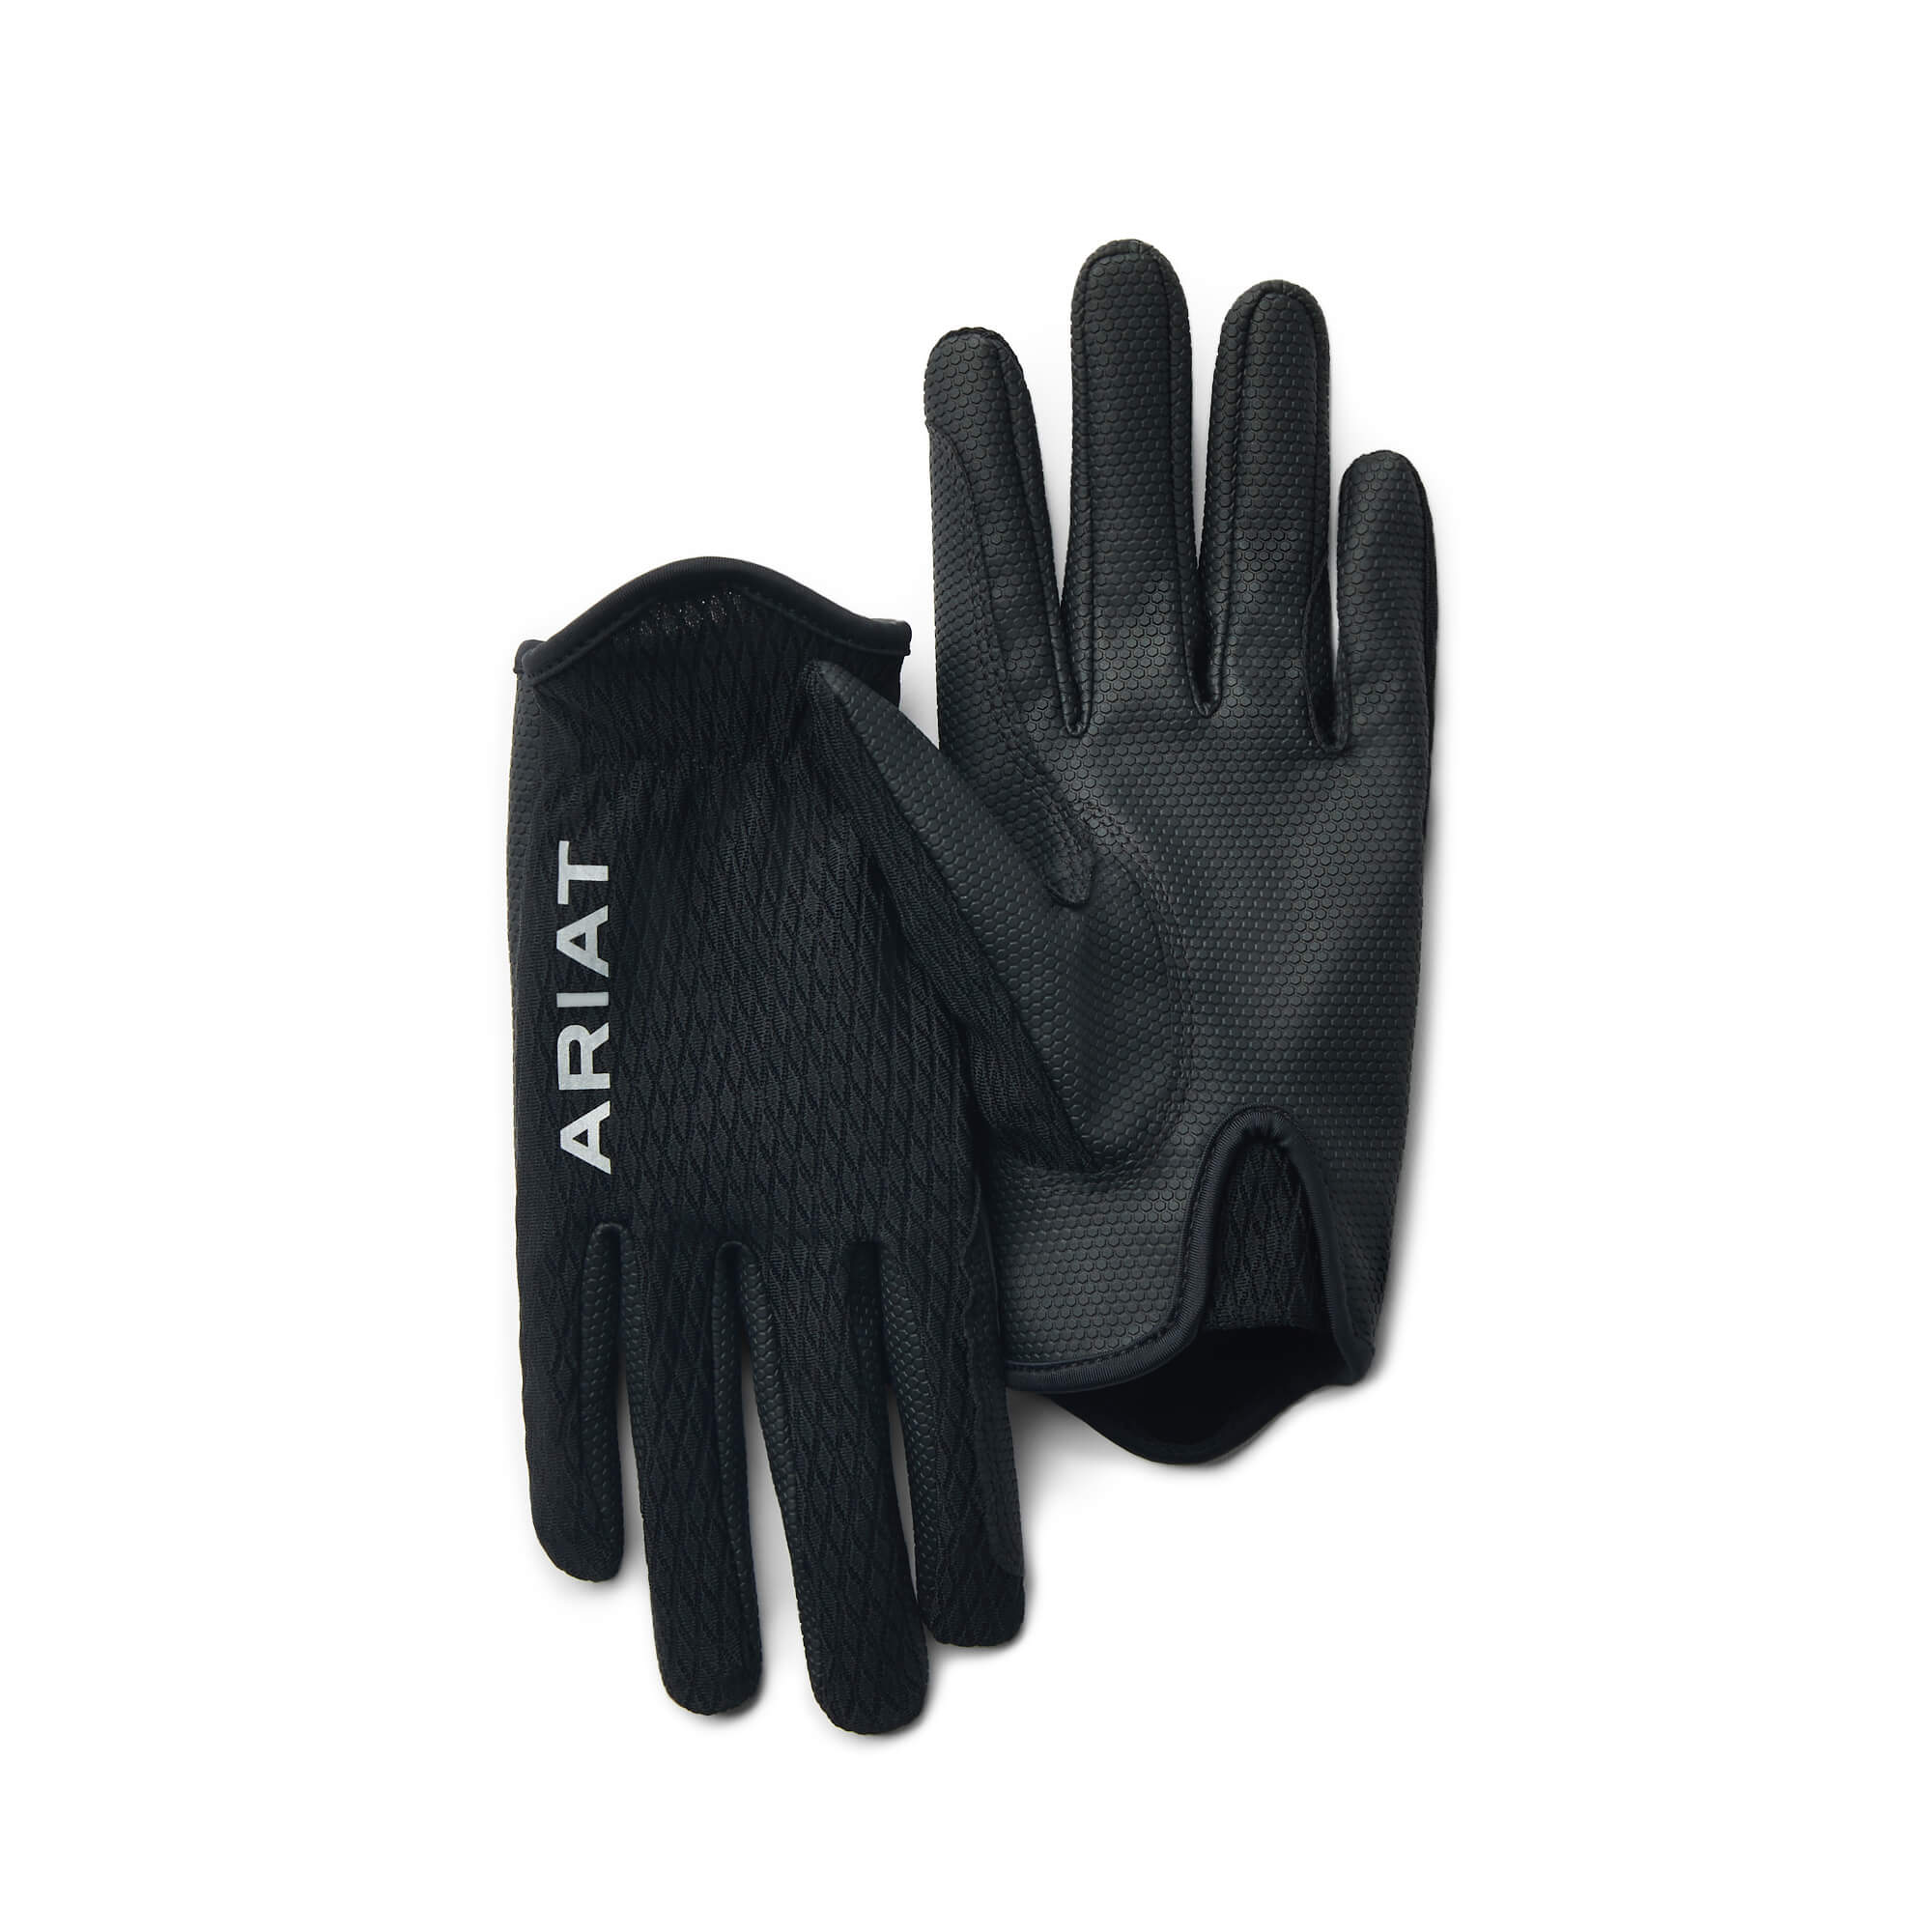 Ariat Cool Grip Gloves - Black